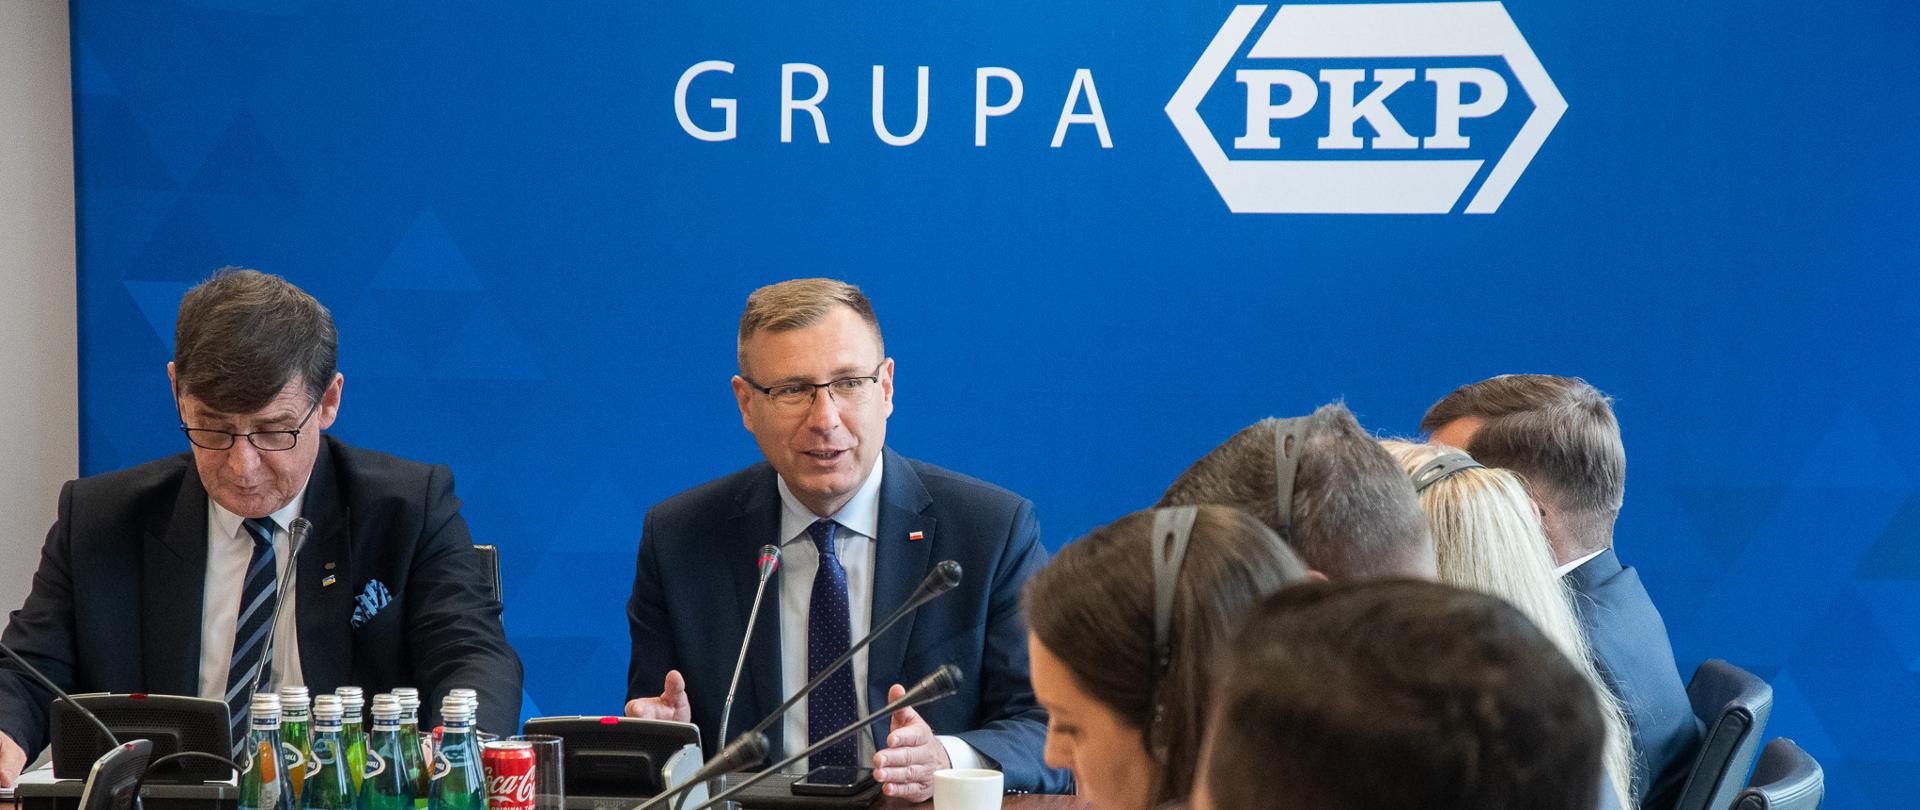 Wiceminister Maciej Małecki i prezes PKP S.A. Krzysztof Mamiński siedzą za stołem z innymi uczestnikami spotkania. W tle ścianka z logotypem Grupa PKP. 